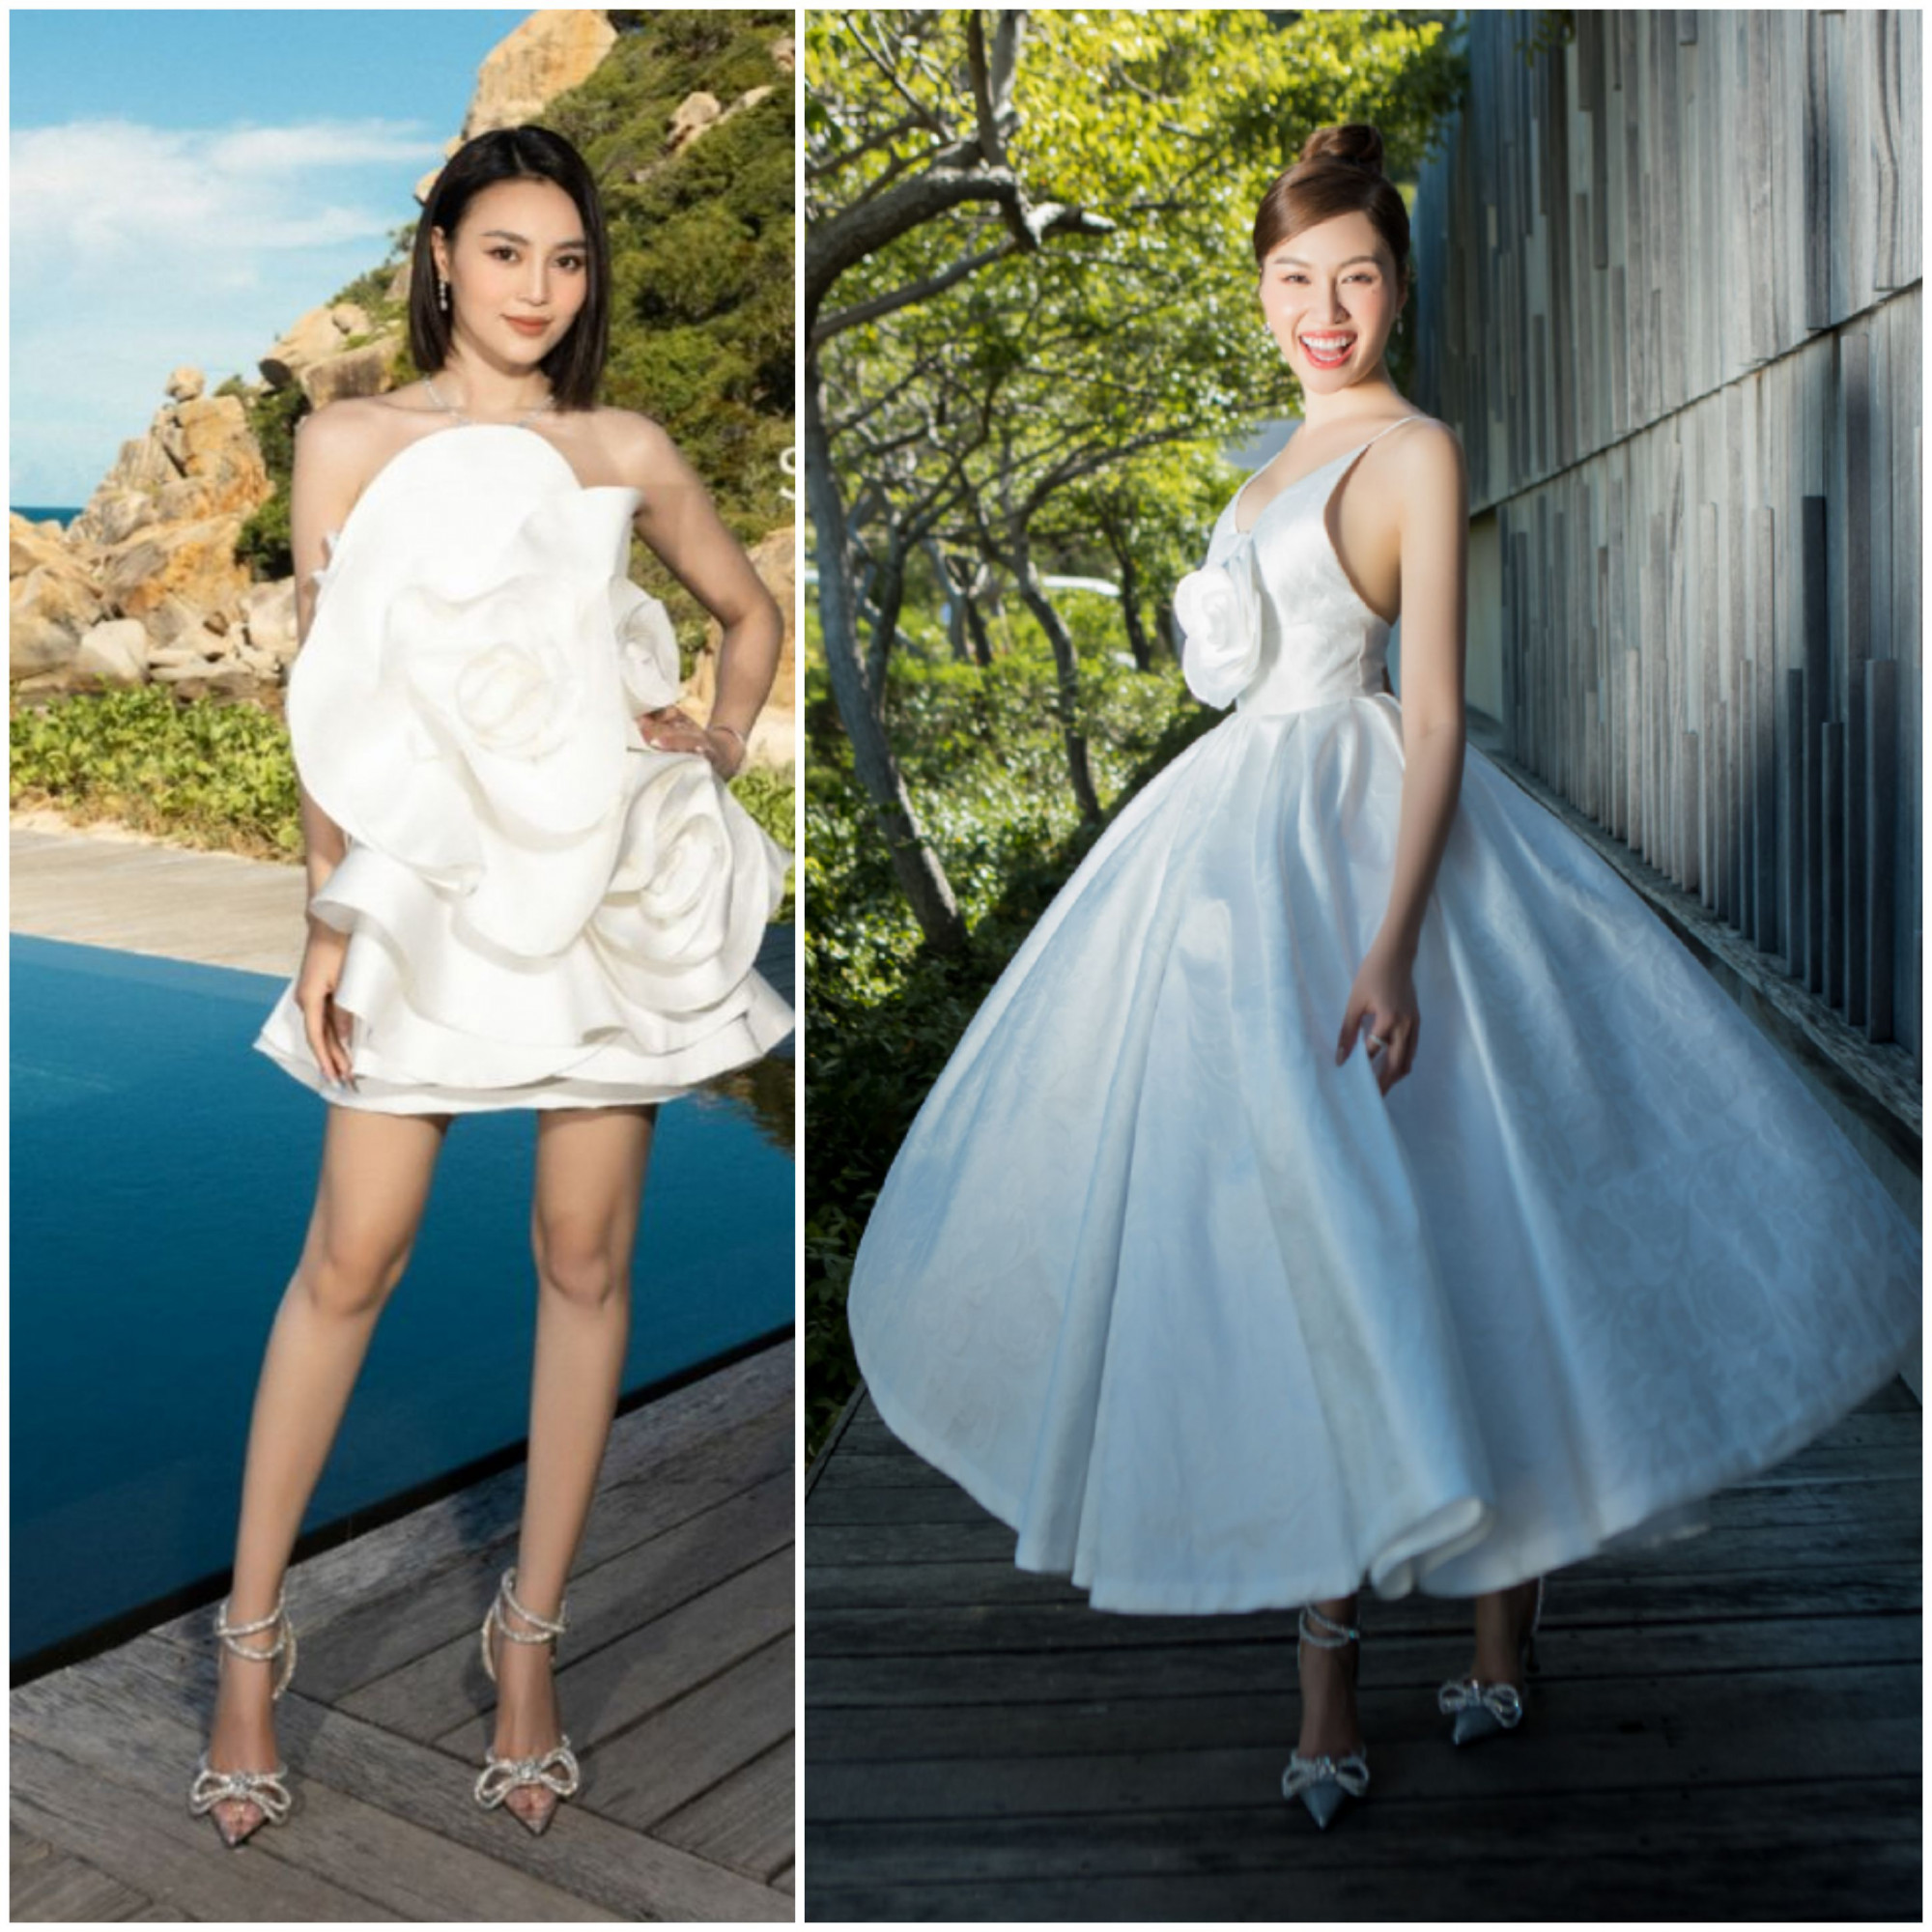 Trong show thời trang gần đây, không hẹn mà gặp Lan Ngọc và MC Thanh Thanh Huyền vô tình chọn chung kiểu giày công chúa thắt nơ xinh đẹp, phối cùng thiết kế trắng đơn sắc, nữ tính.